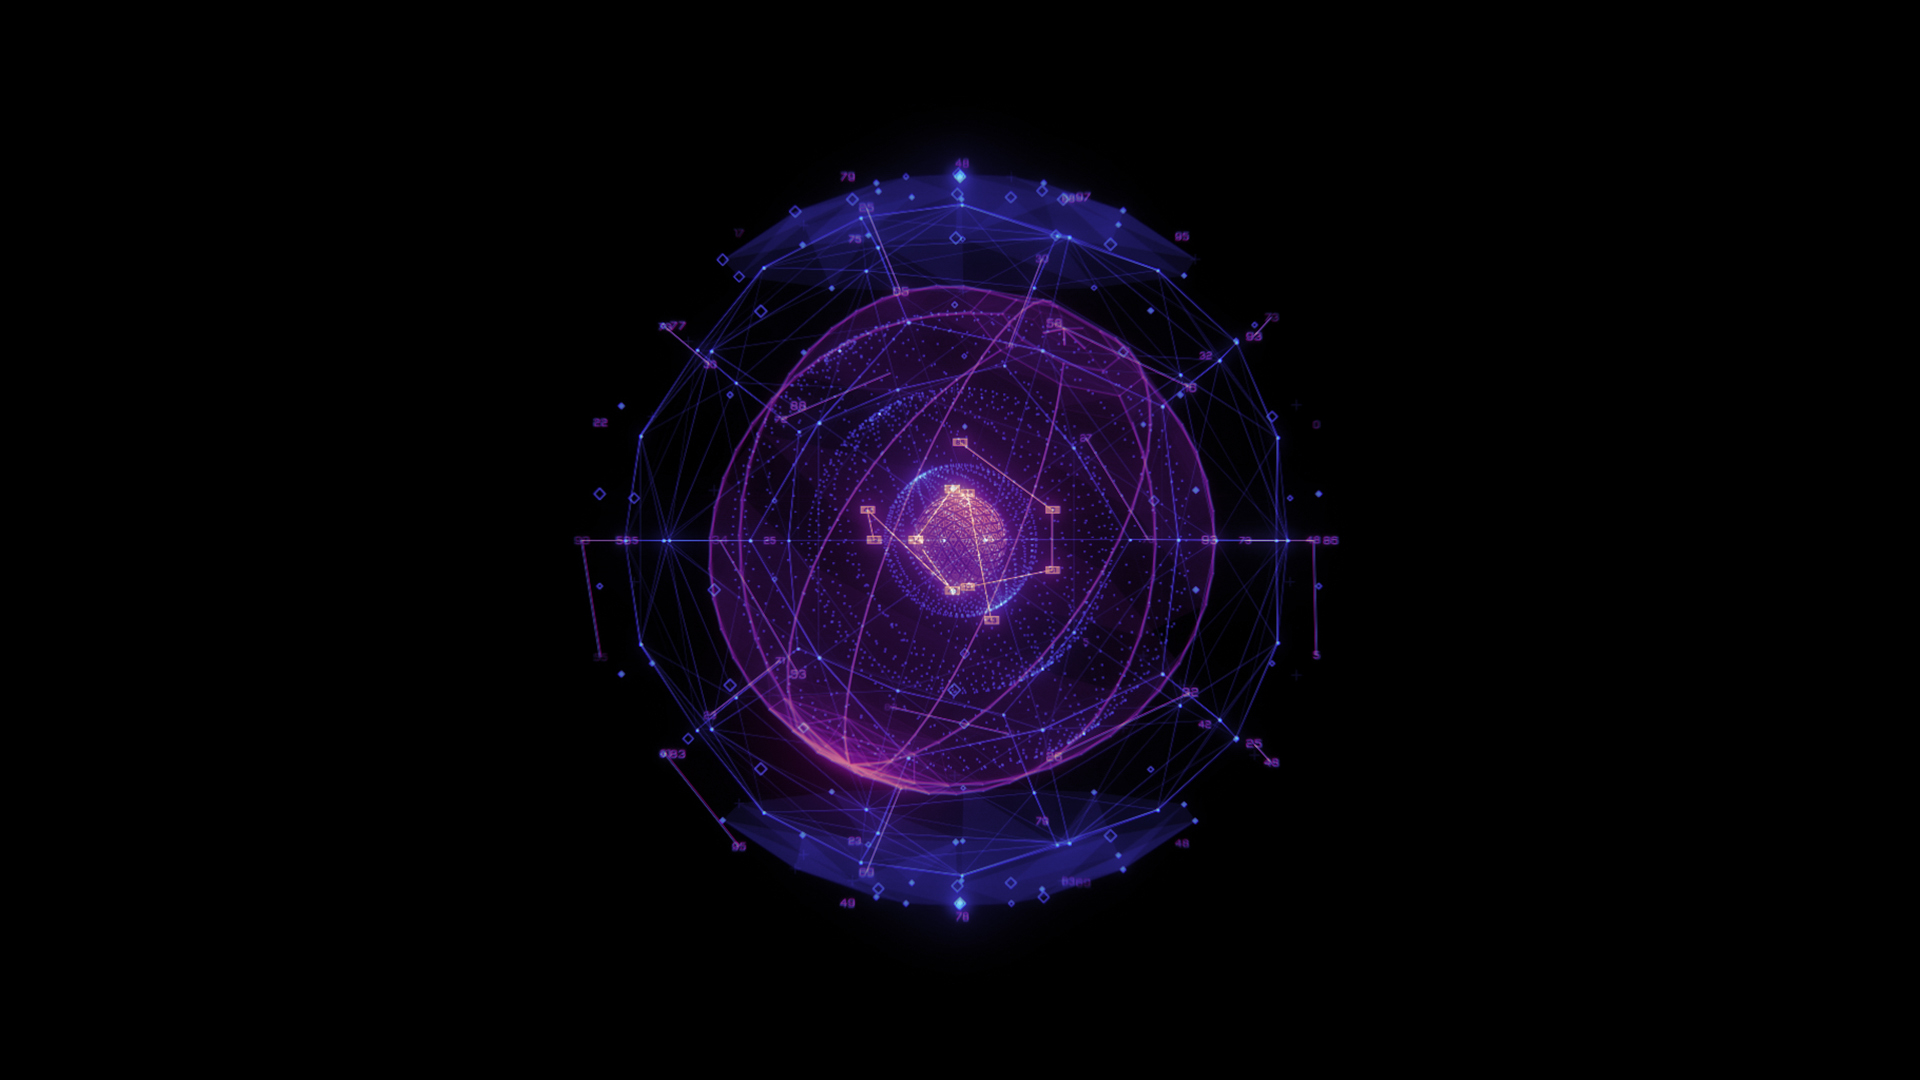 Precipice Part 1 image of a purple matrix